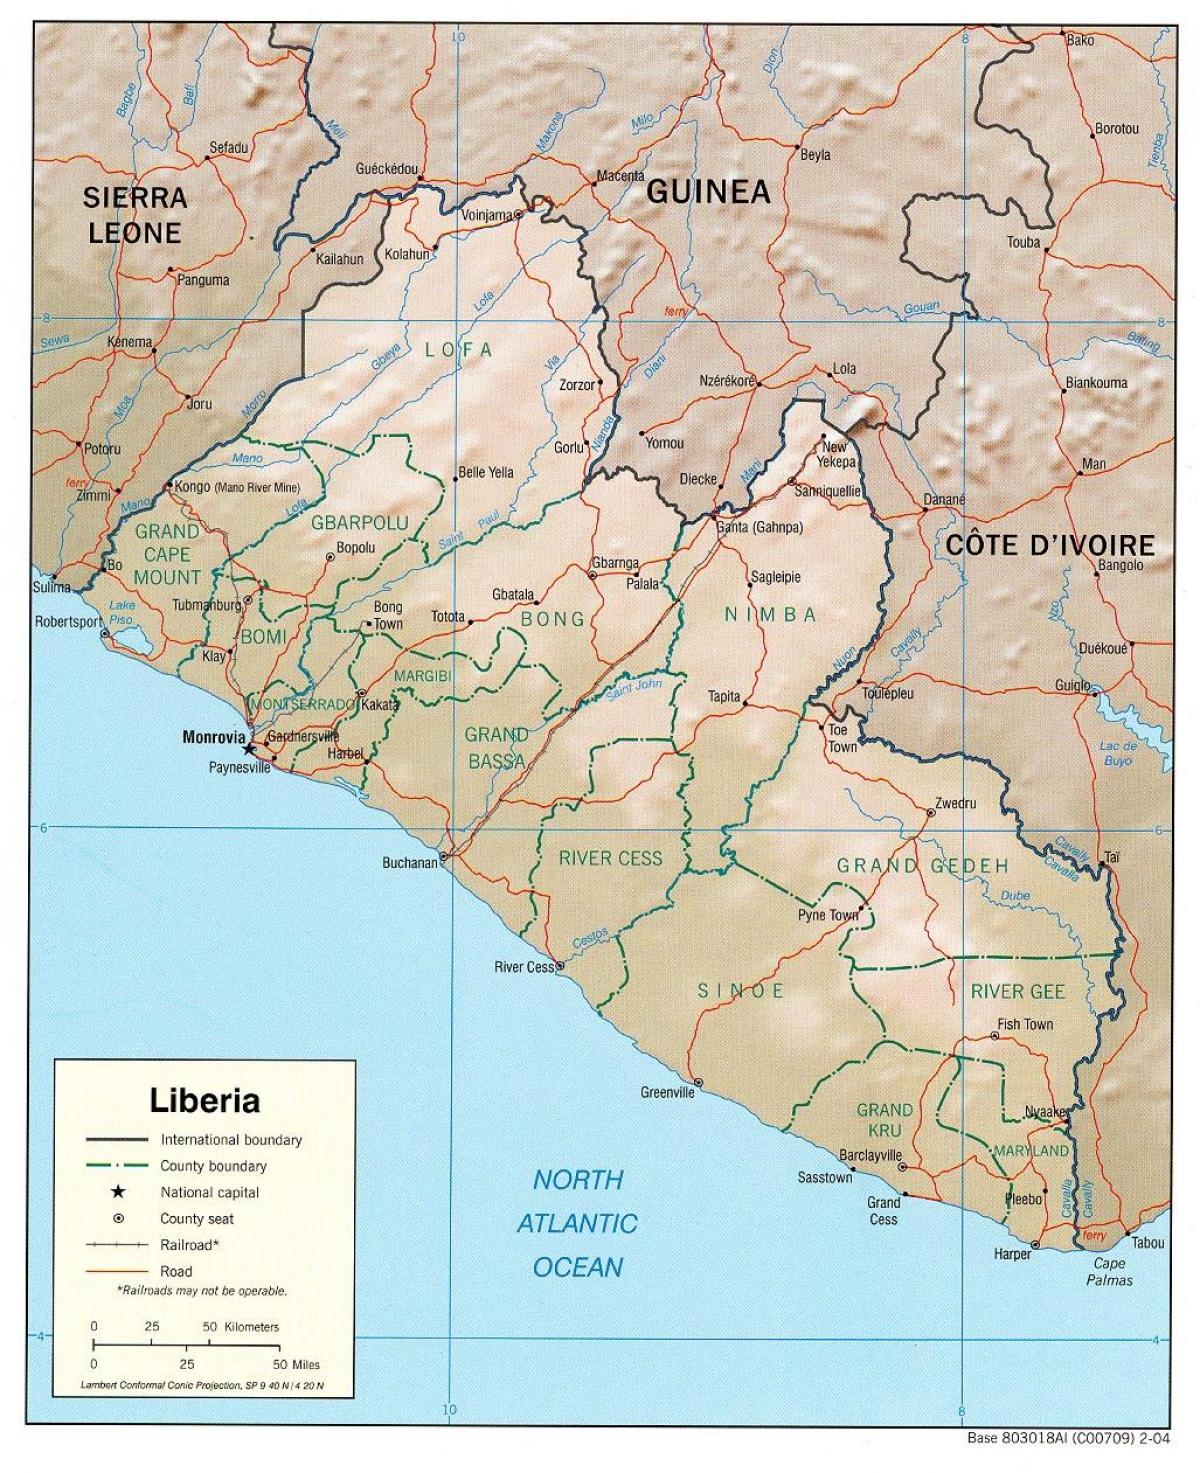 แผนที่ของแผนที่ทางภูมิศาสตร์ของไลบีเรีย